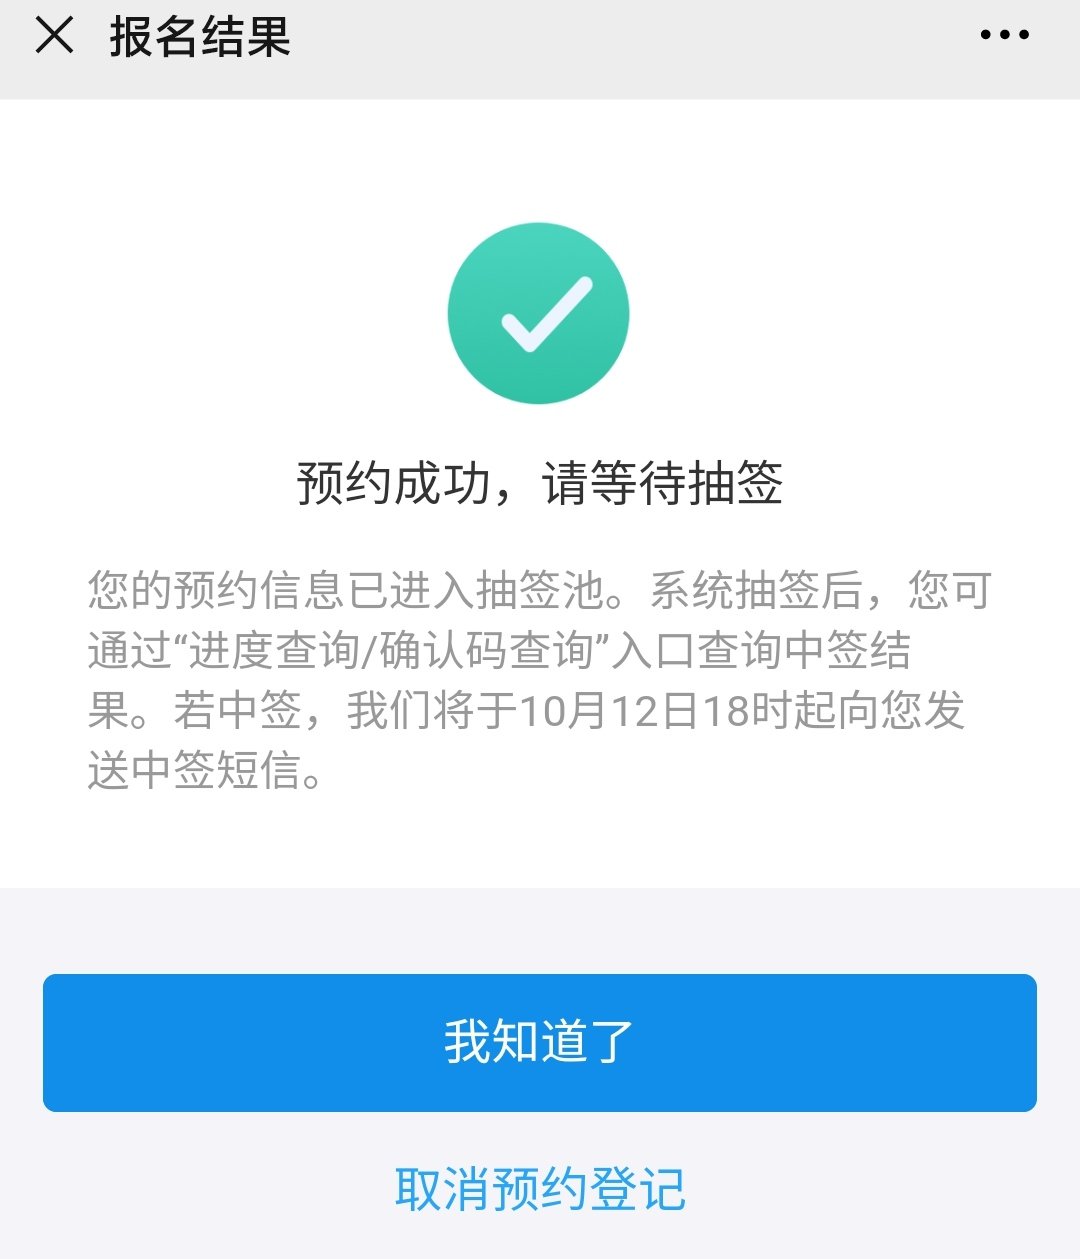 2020深圳数字人民币红包预约抽签流程